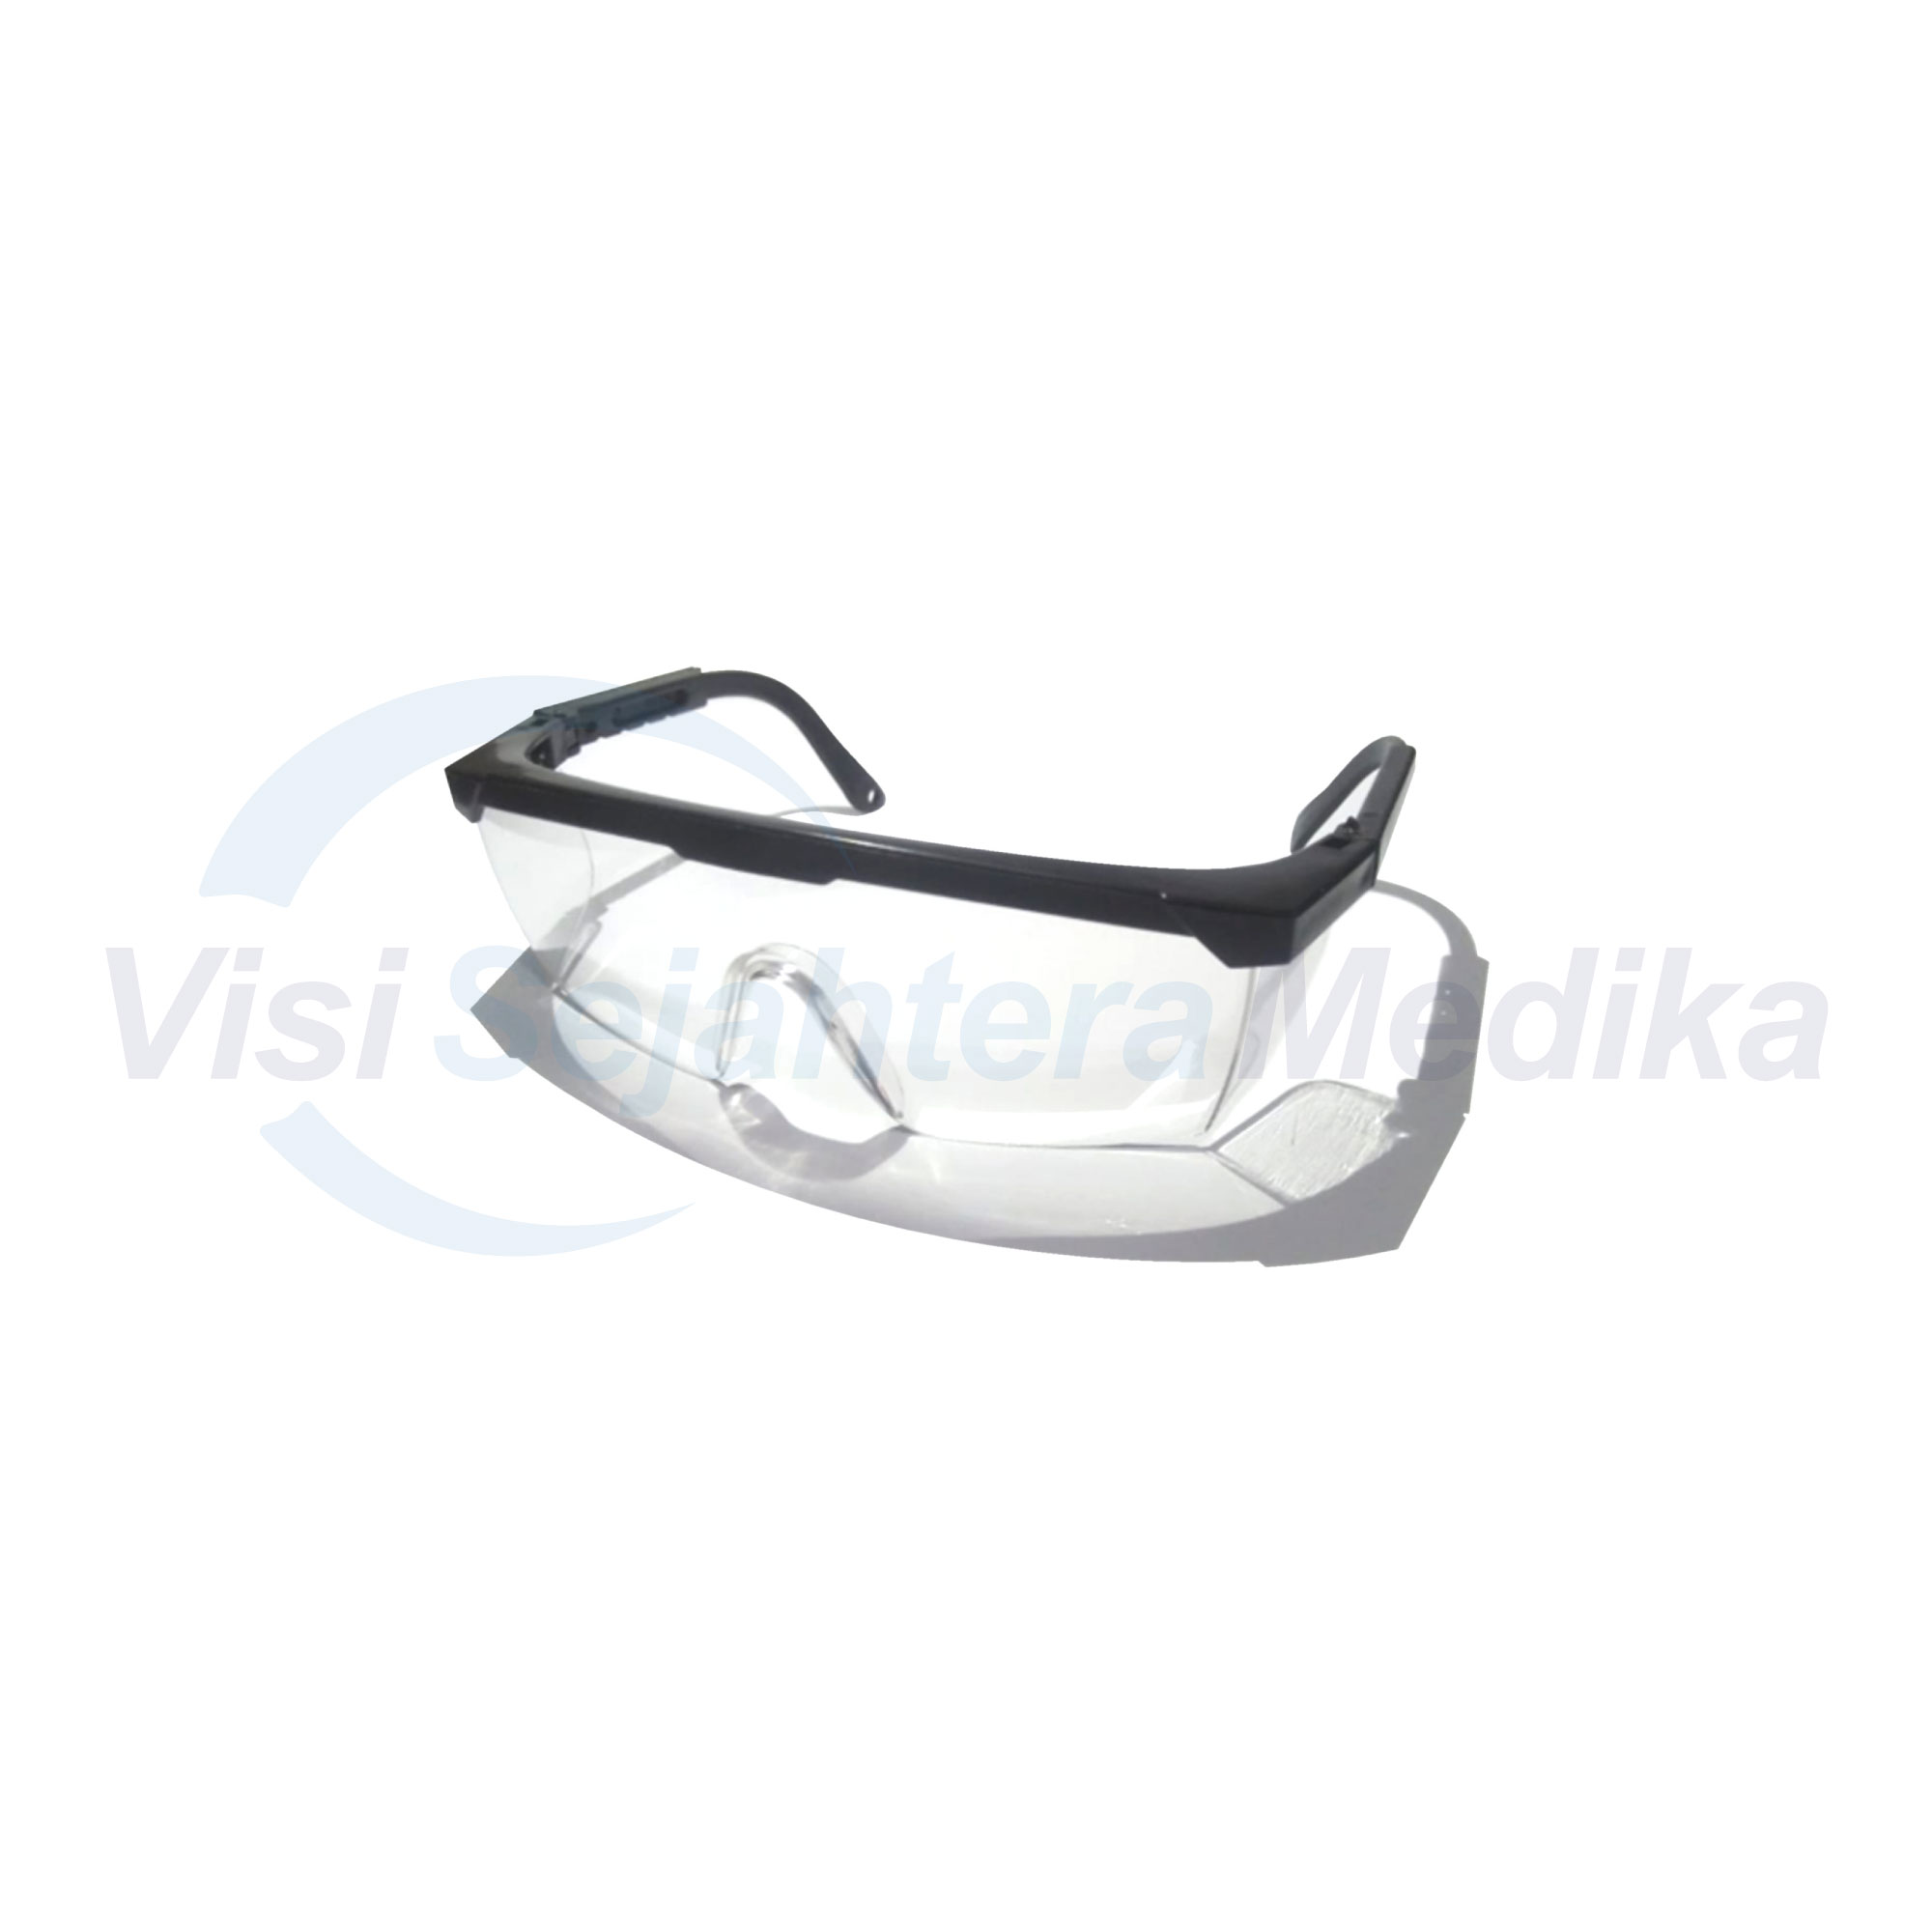 kacamata-google-kacamata-130150ace83828d.jpg